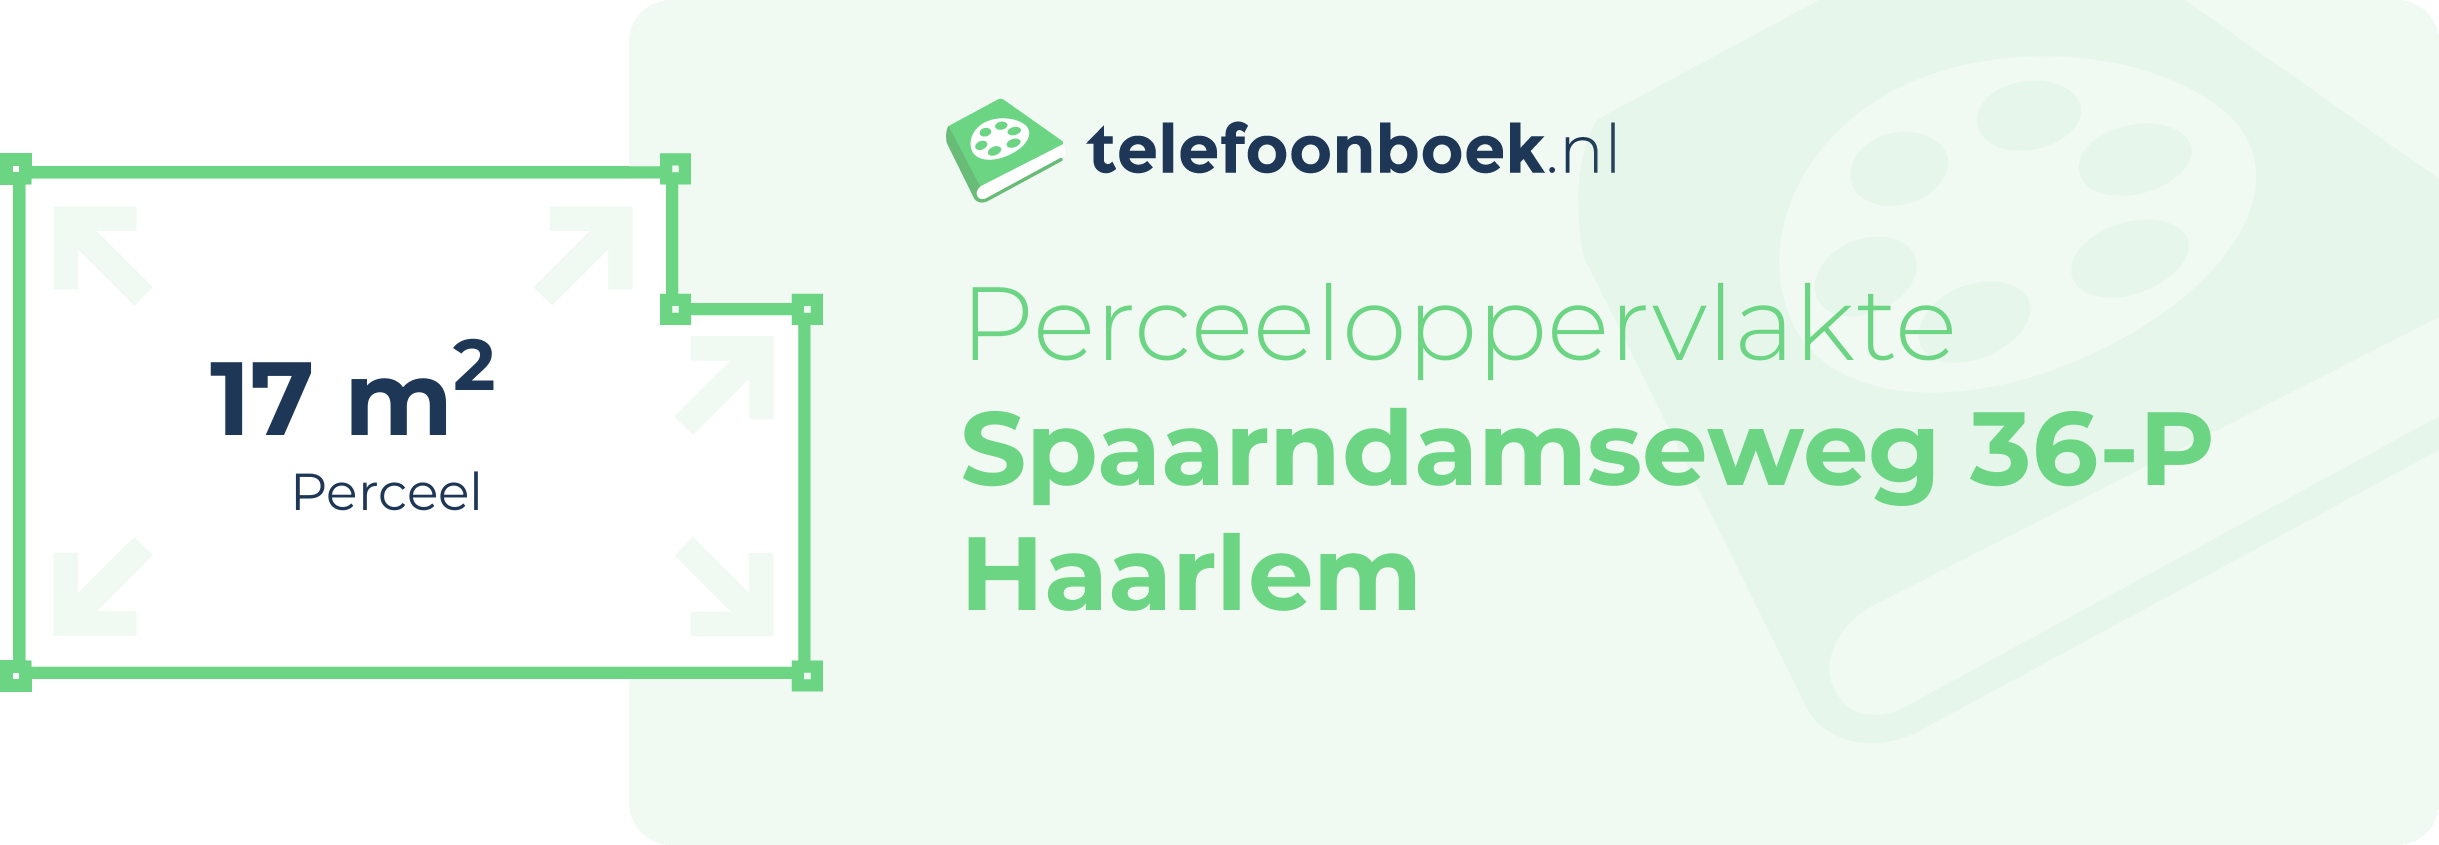 Perceeloppervlakte Spaarndamseweg 36-P Haarlem